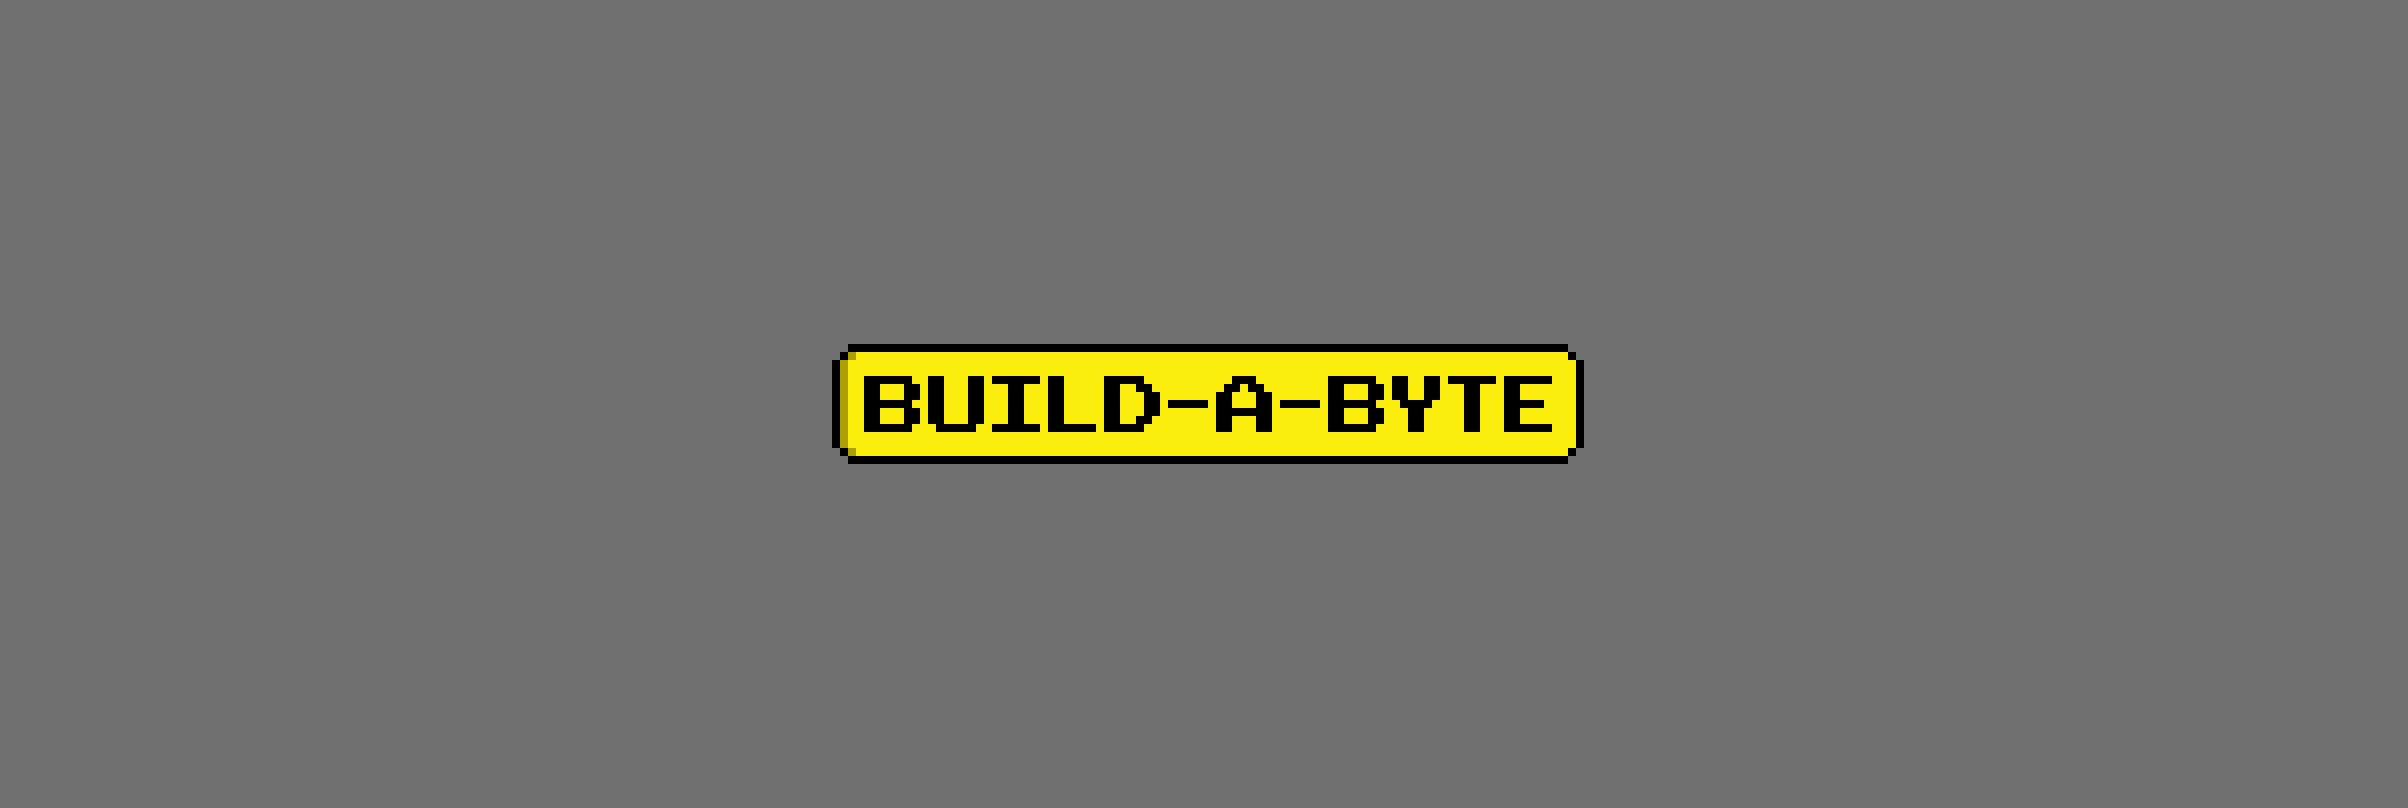 Build-A-Byte bannière